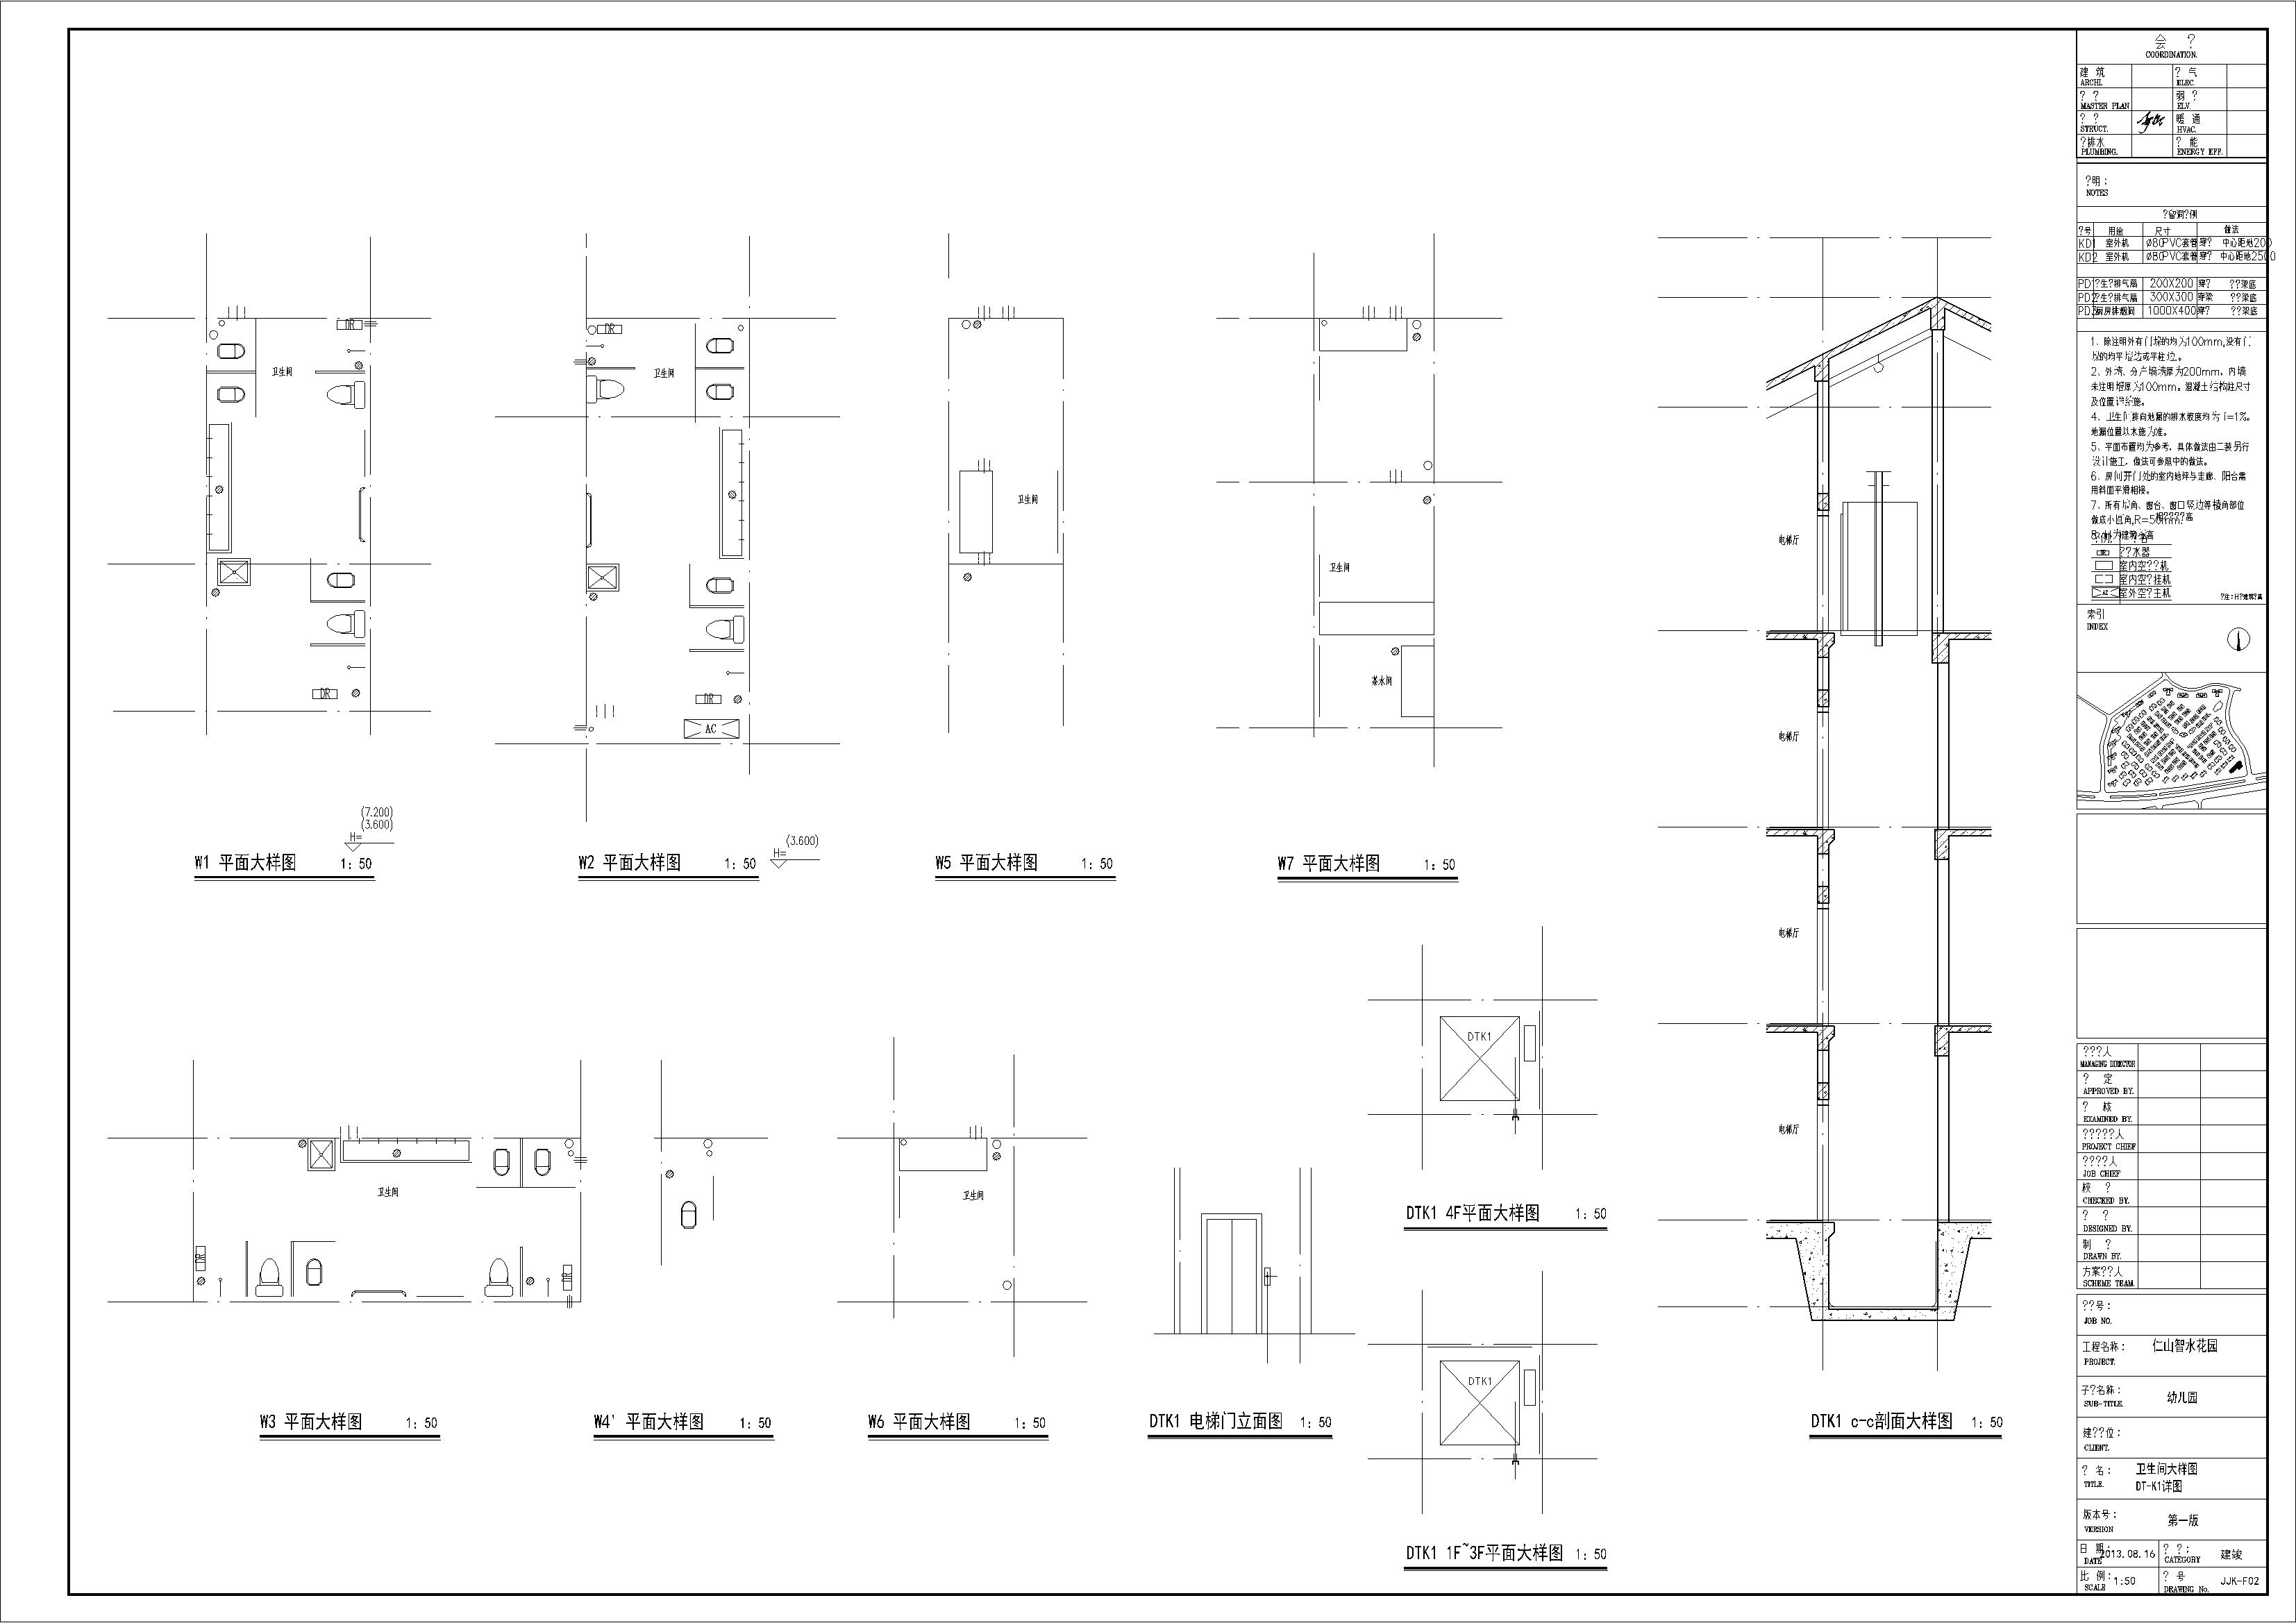 仁山智水花园4层12班幼儿园建筑设计施工图